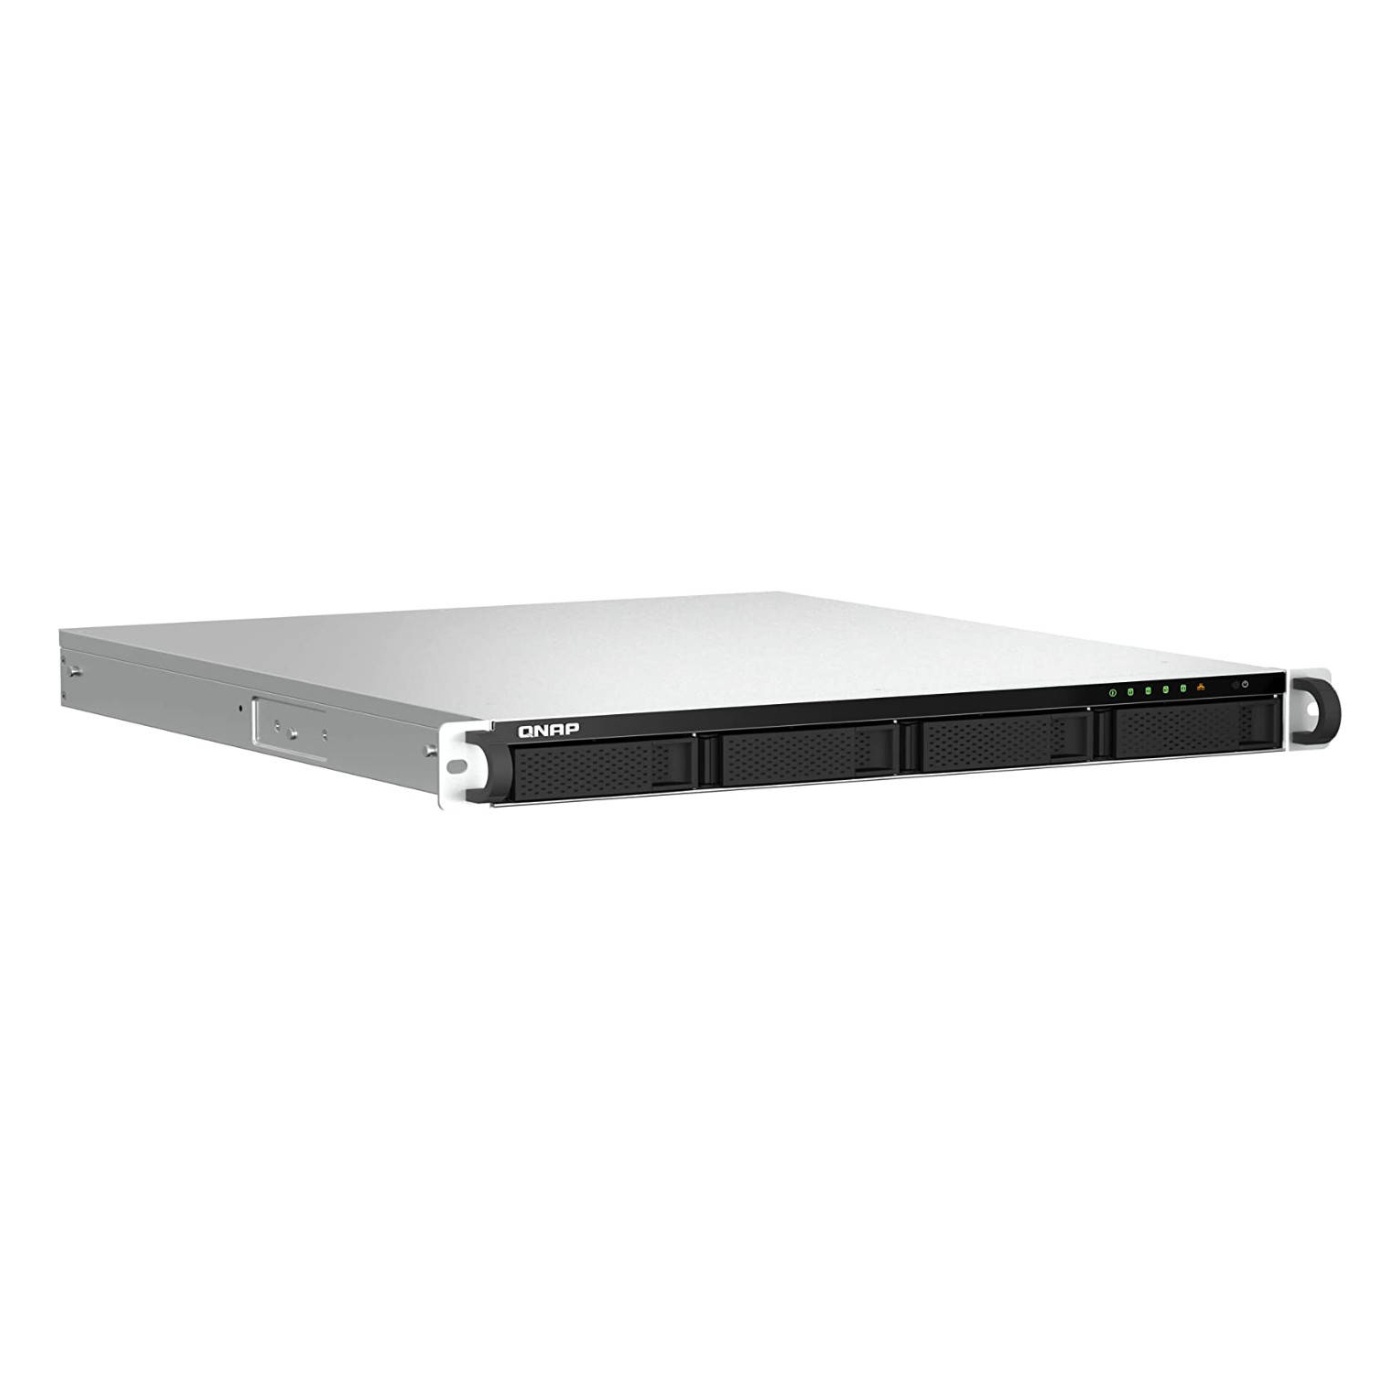 Серверное сетевое хранилище QNAP TS-464U-RP, 4 отсека, 4 ГБ, без дисков, черный сетевое хранилище без дисков qnap ts 873aeu rp 4g